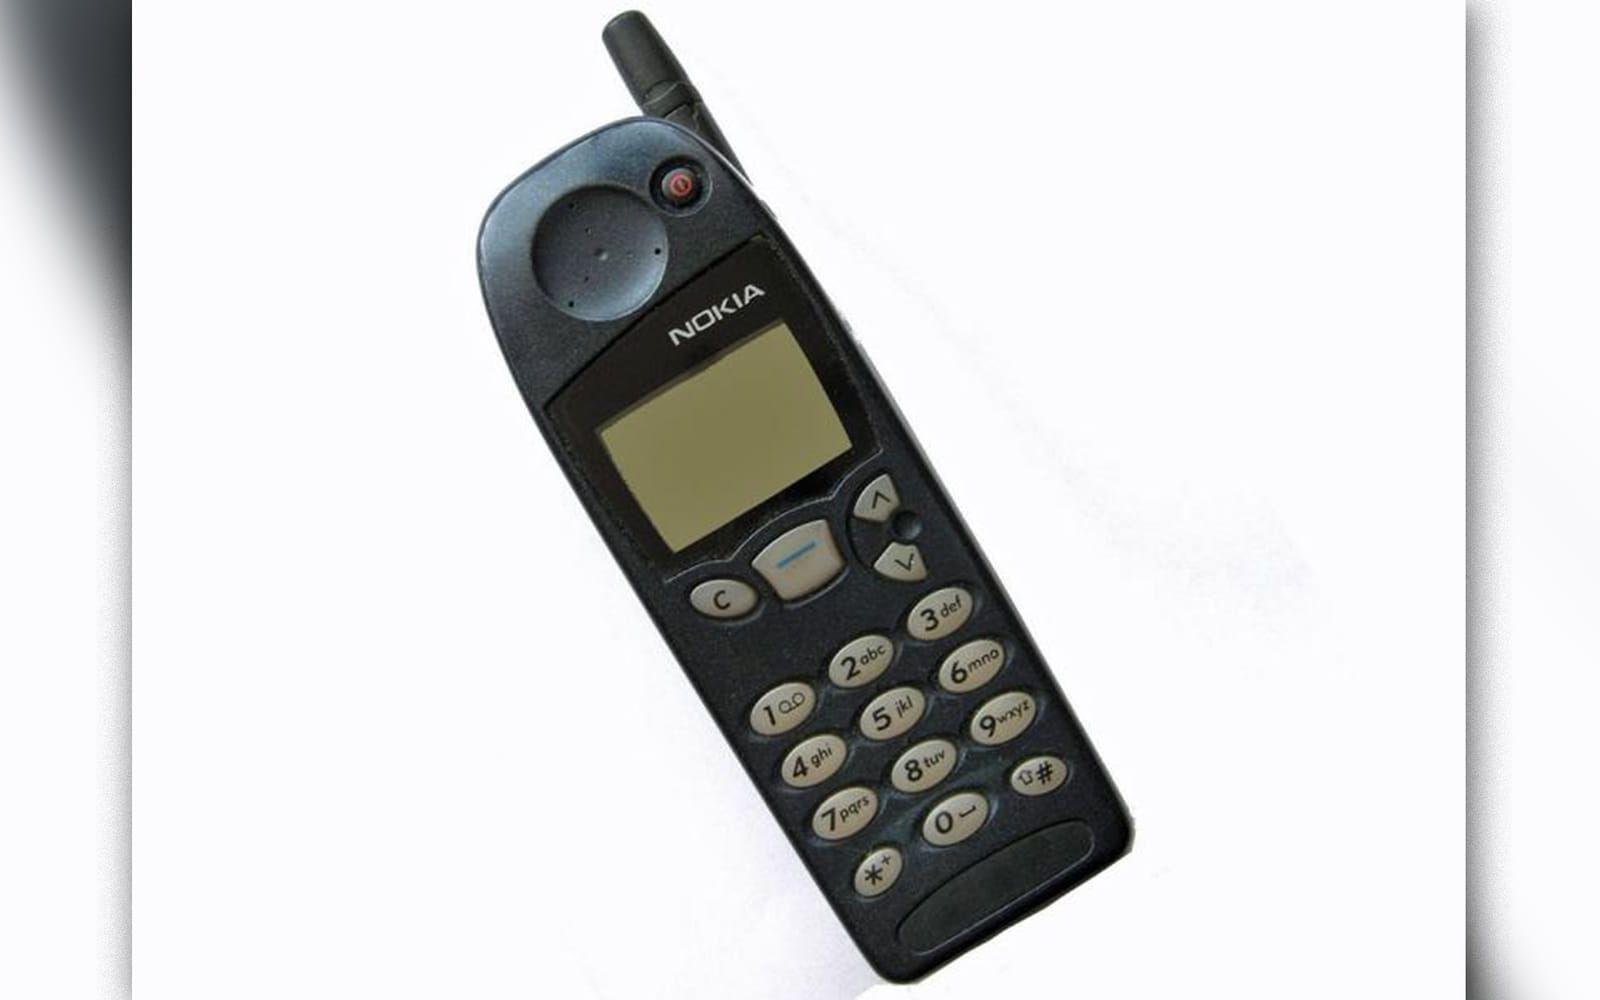 Nokia 5110.